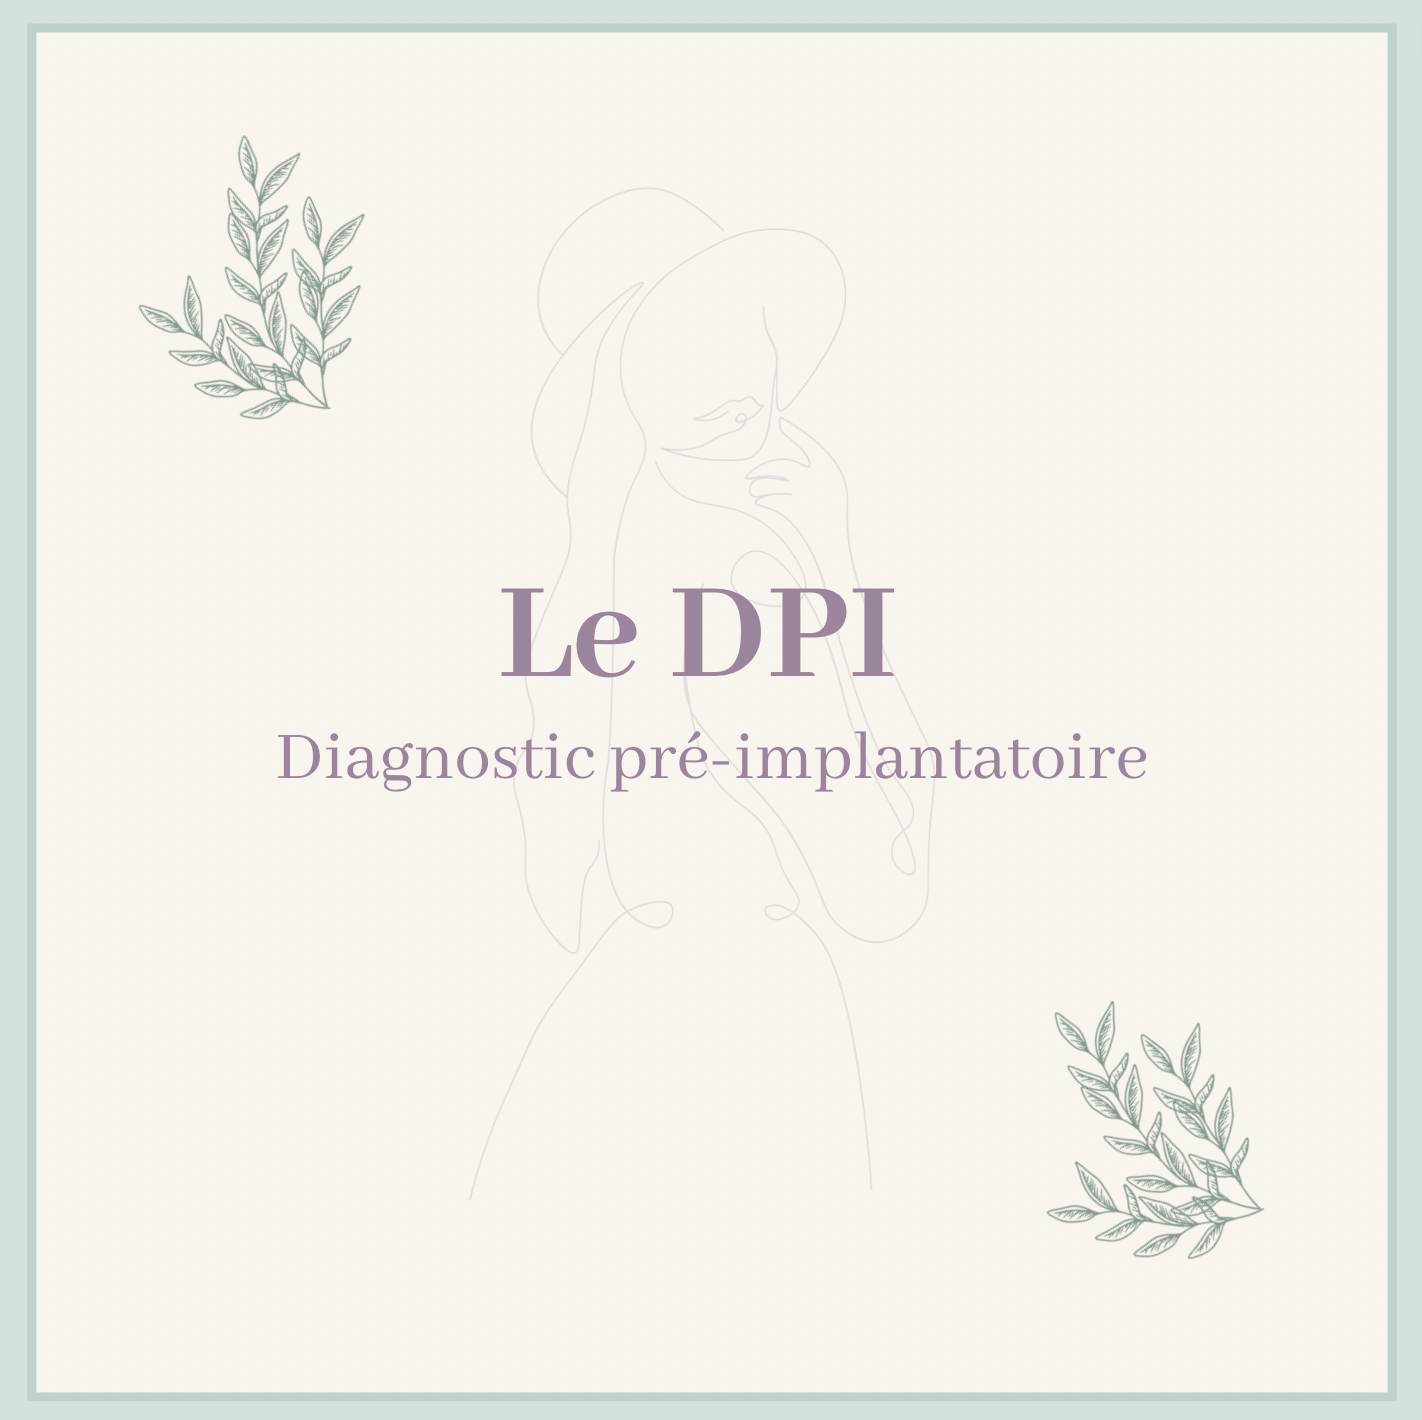 Lire la suite à propos de l’article Le DPI : Diagnostic pré-implantatoire